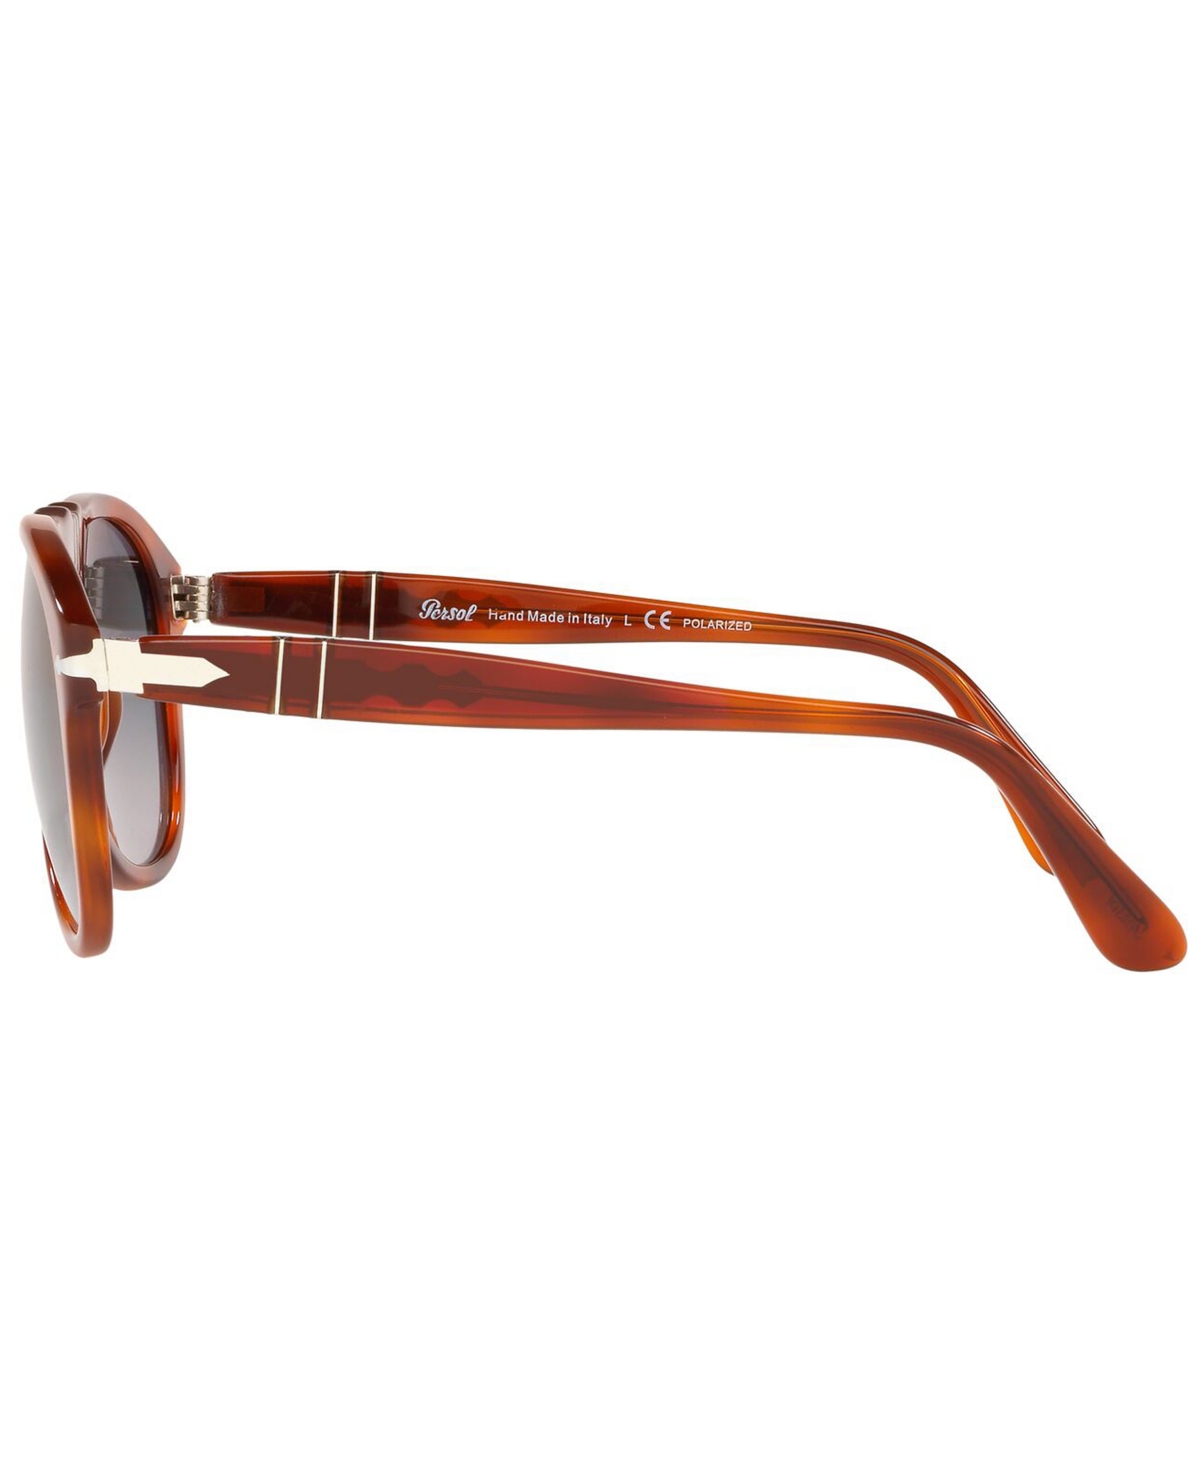 Shop Persol Men's Polarized Sunglasses, Po0649 Gradient In Terra Di Siena,grey Gradient Polar